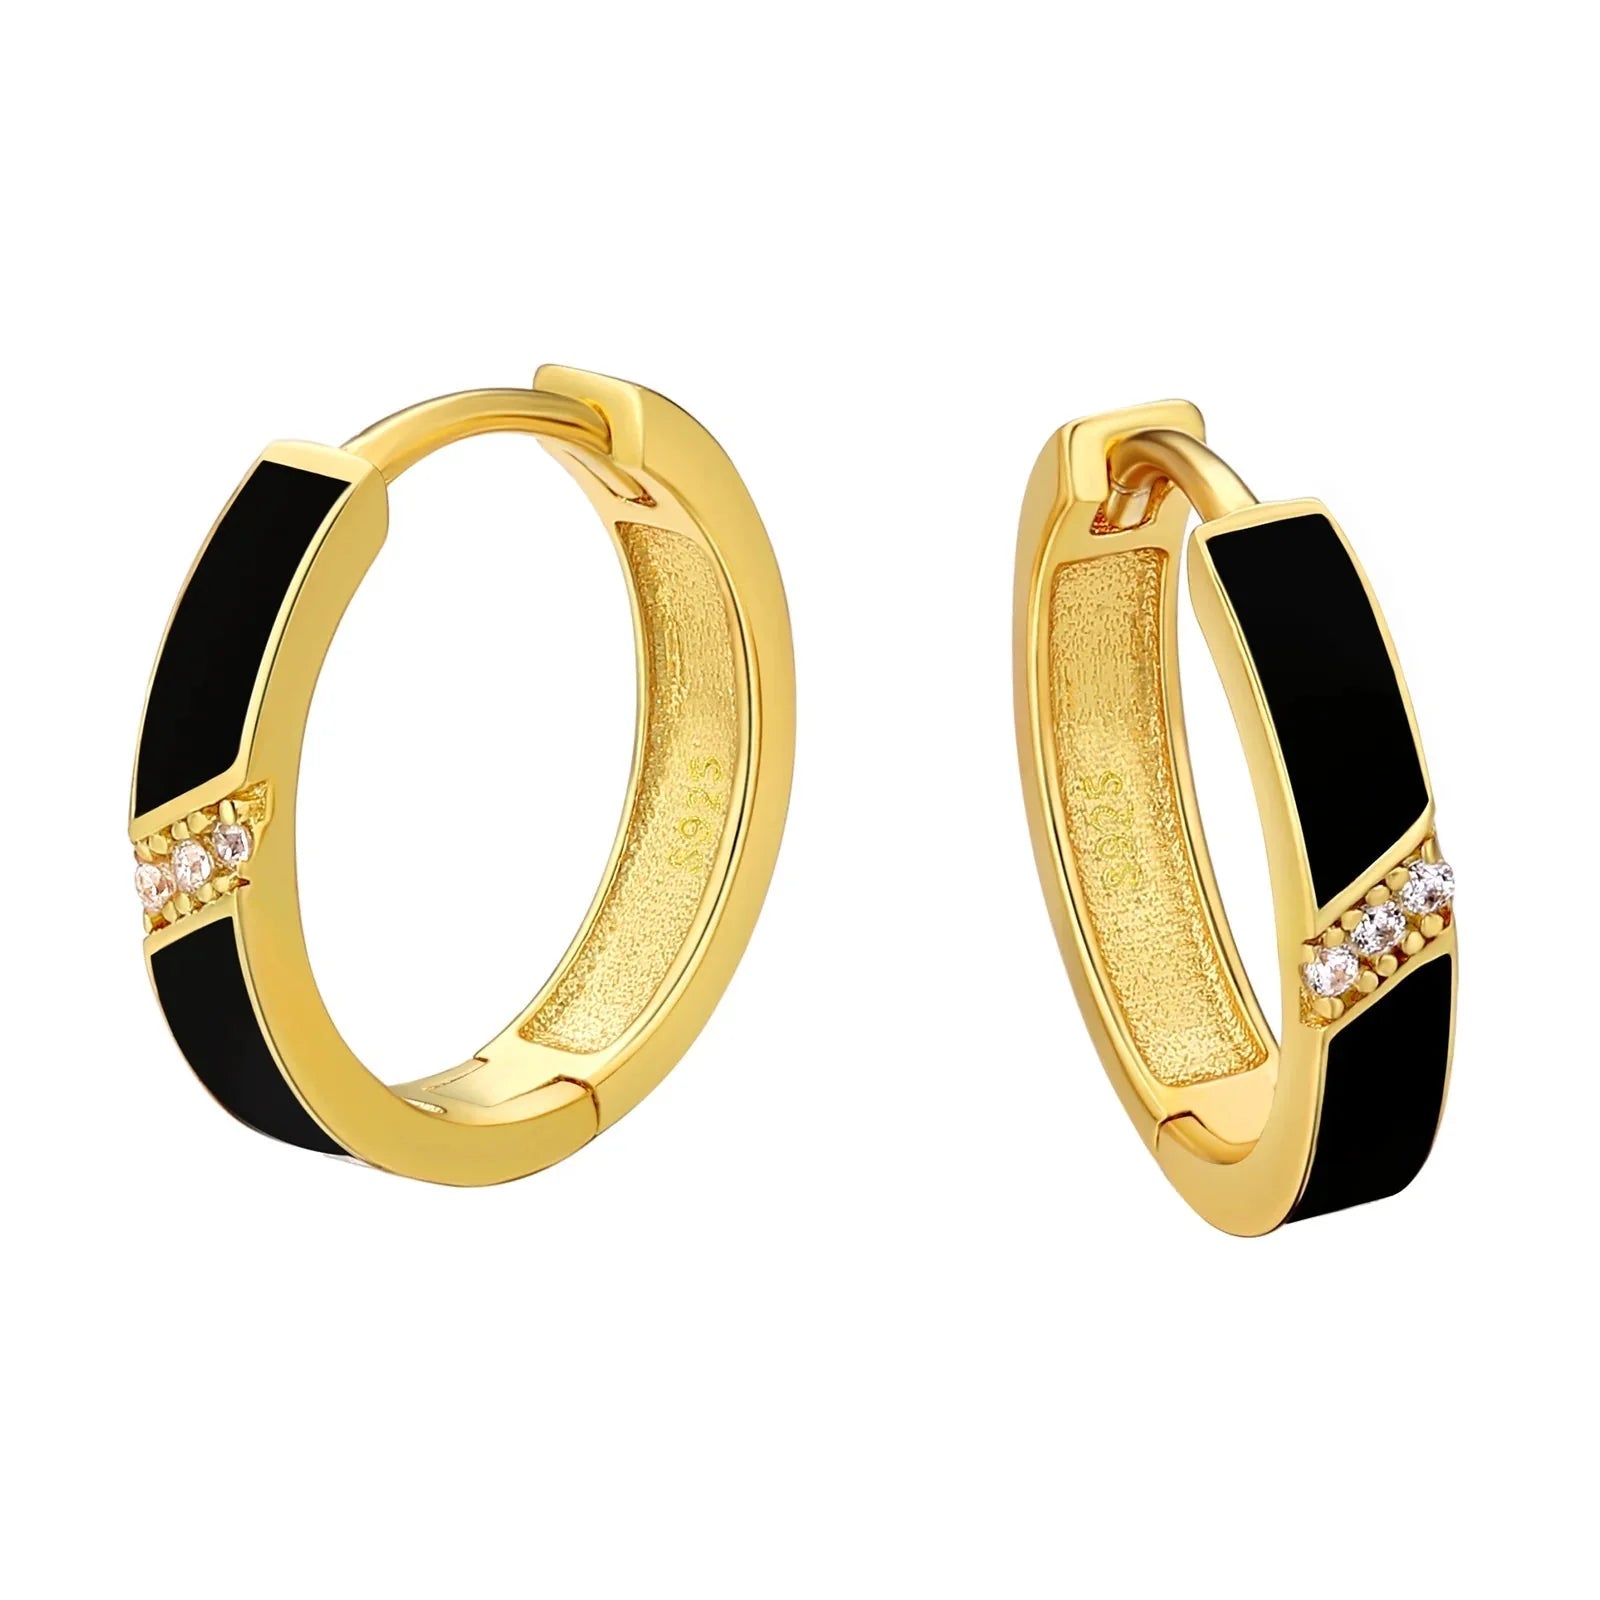 Women's S925 Diamond Black Hoop Earrings in 14K Gold - 15mm Earrings 15mm S925 14K Gold